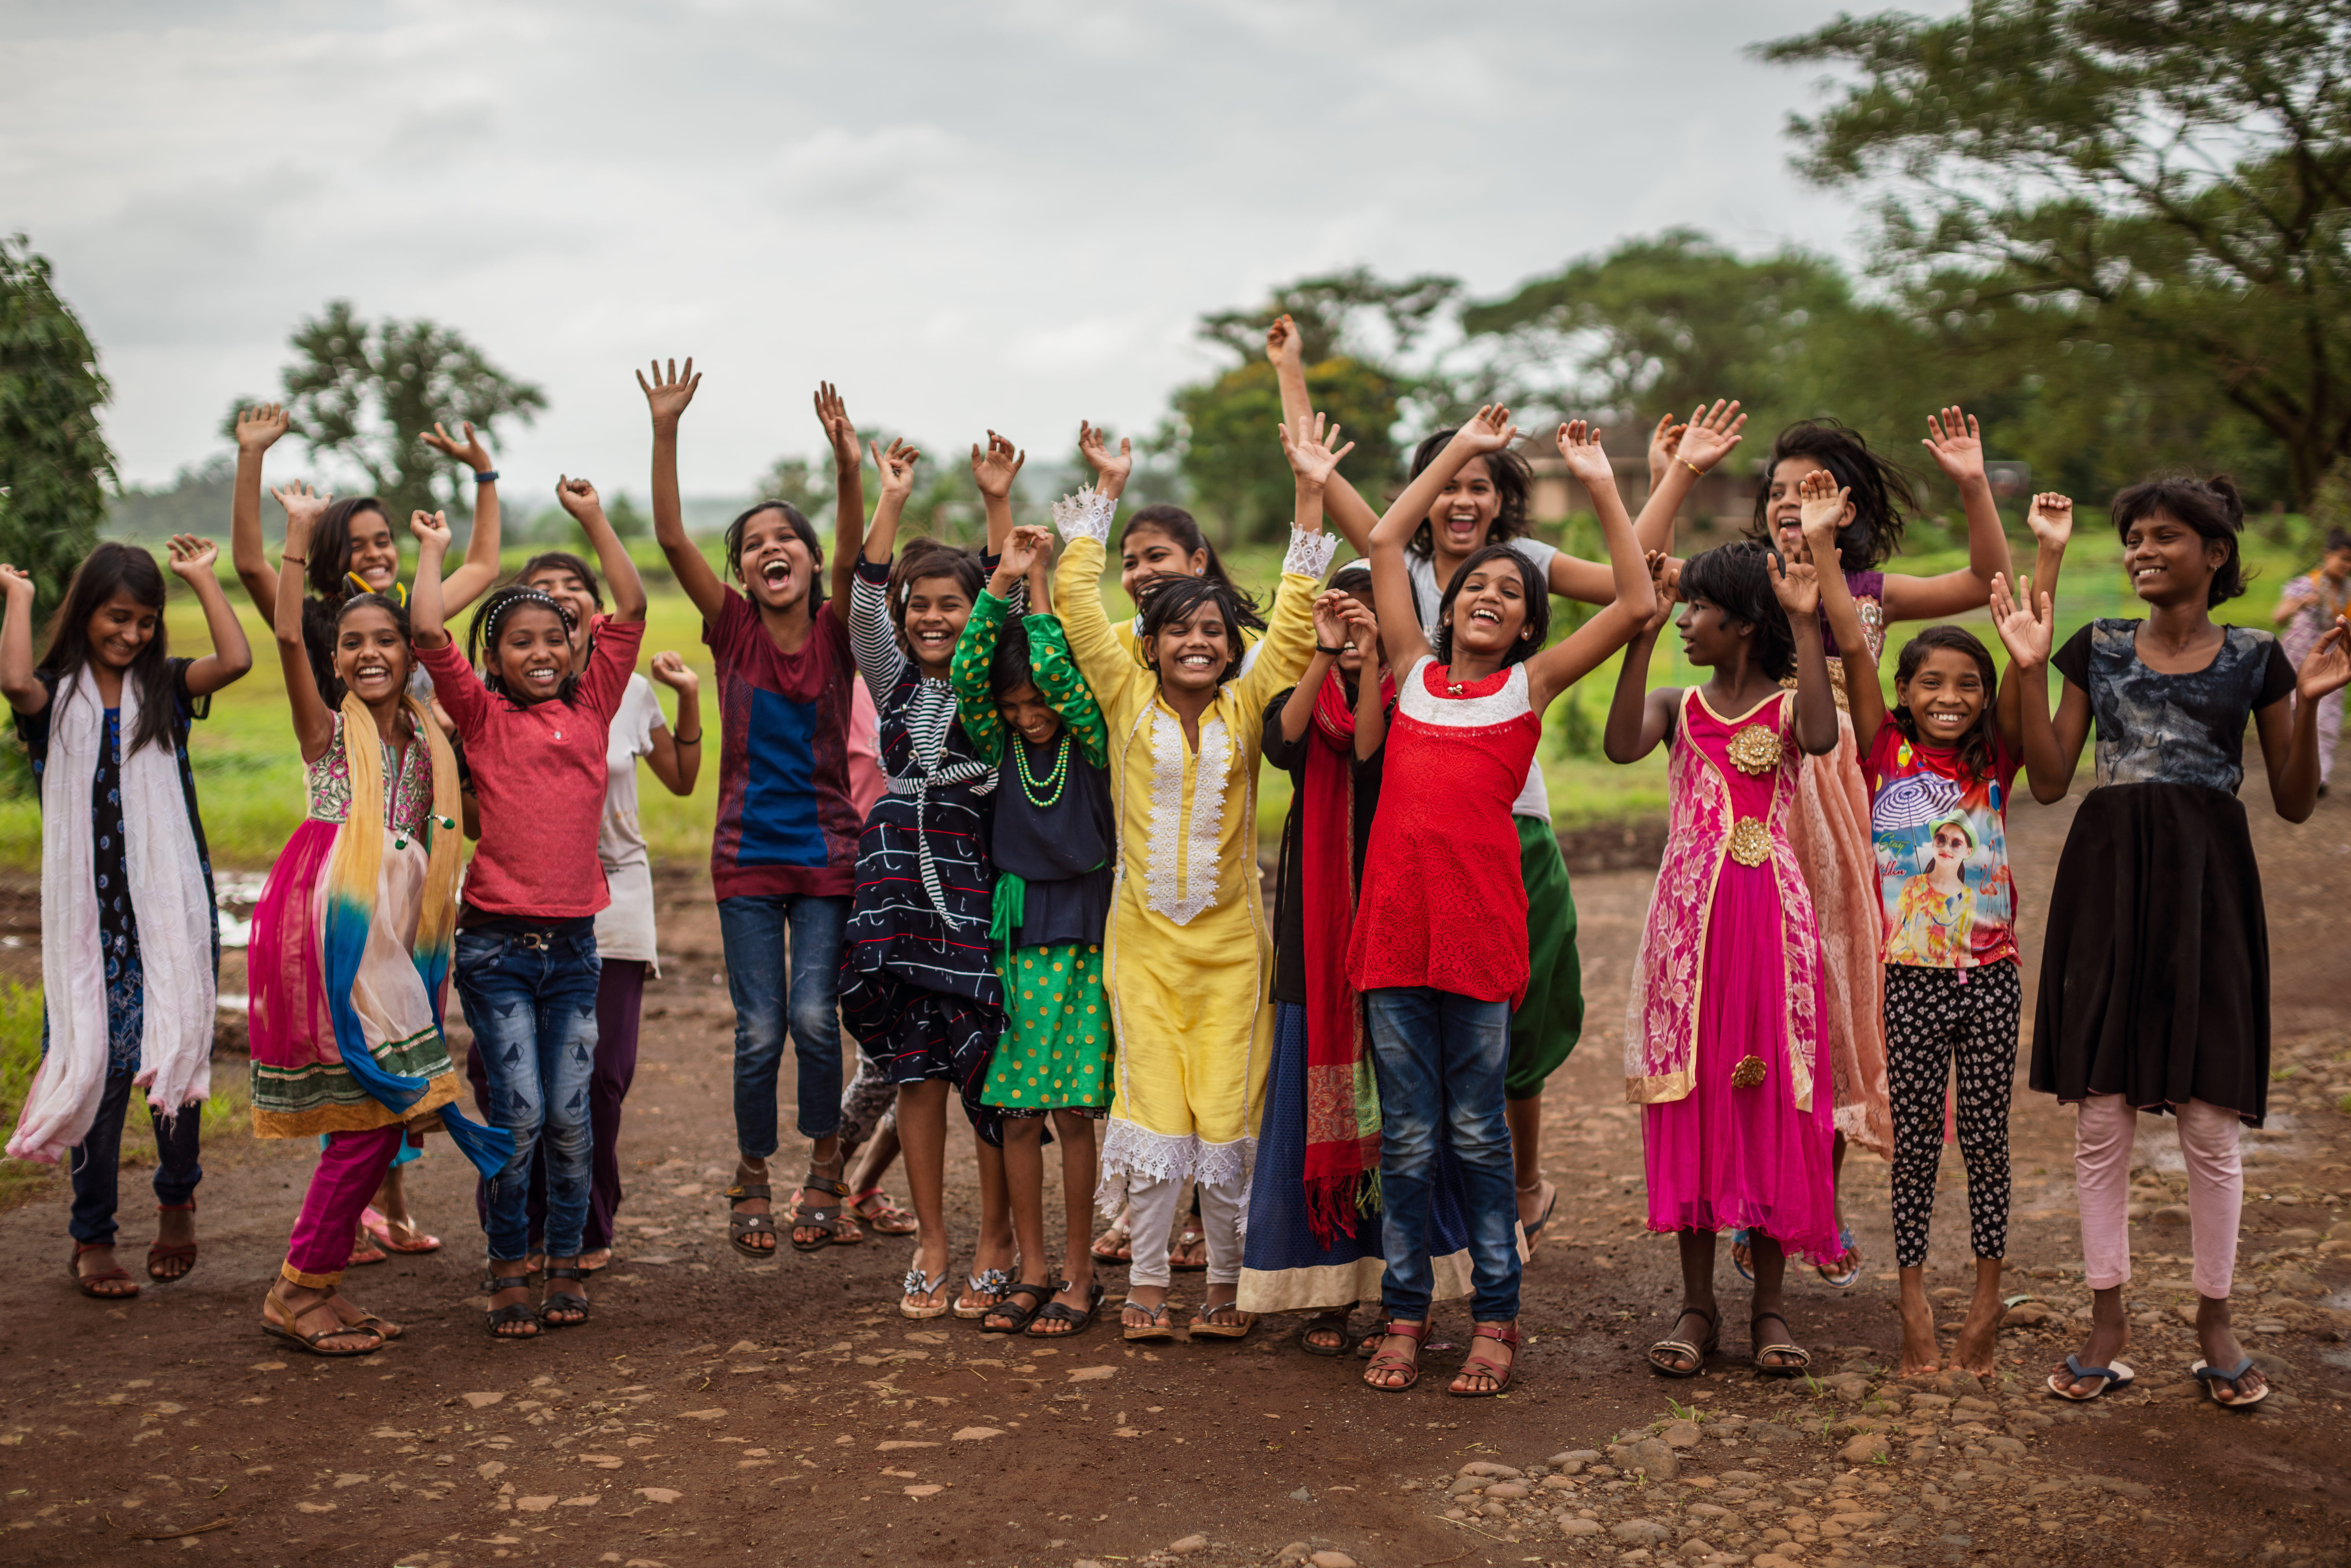 Winkende Kinder in Indien - Gruppenbild. (Quelle: Jakob Studnar)